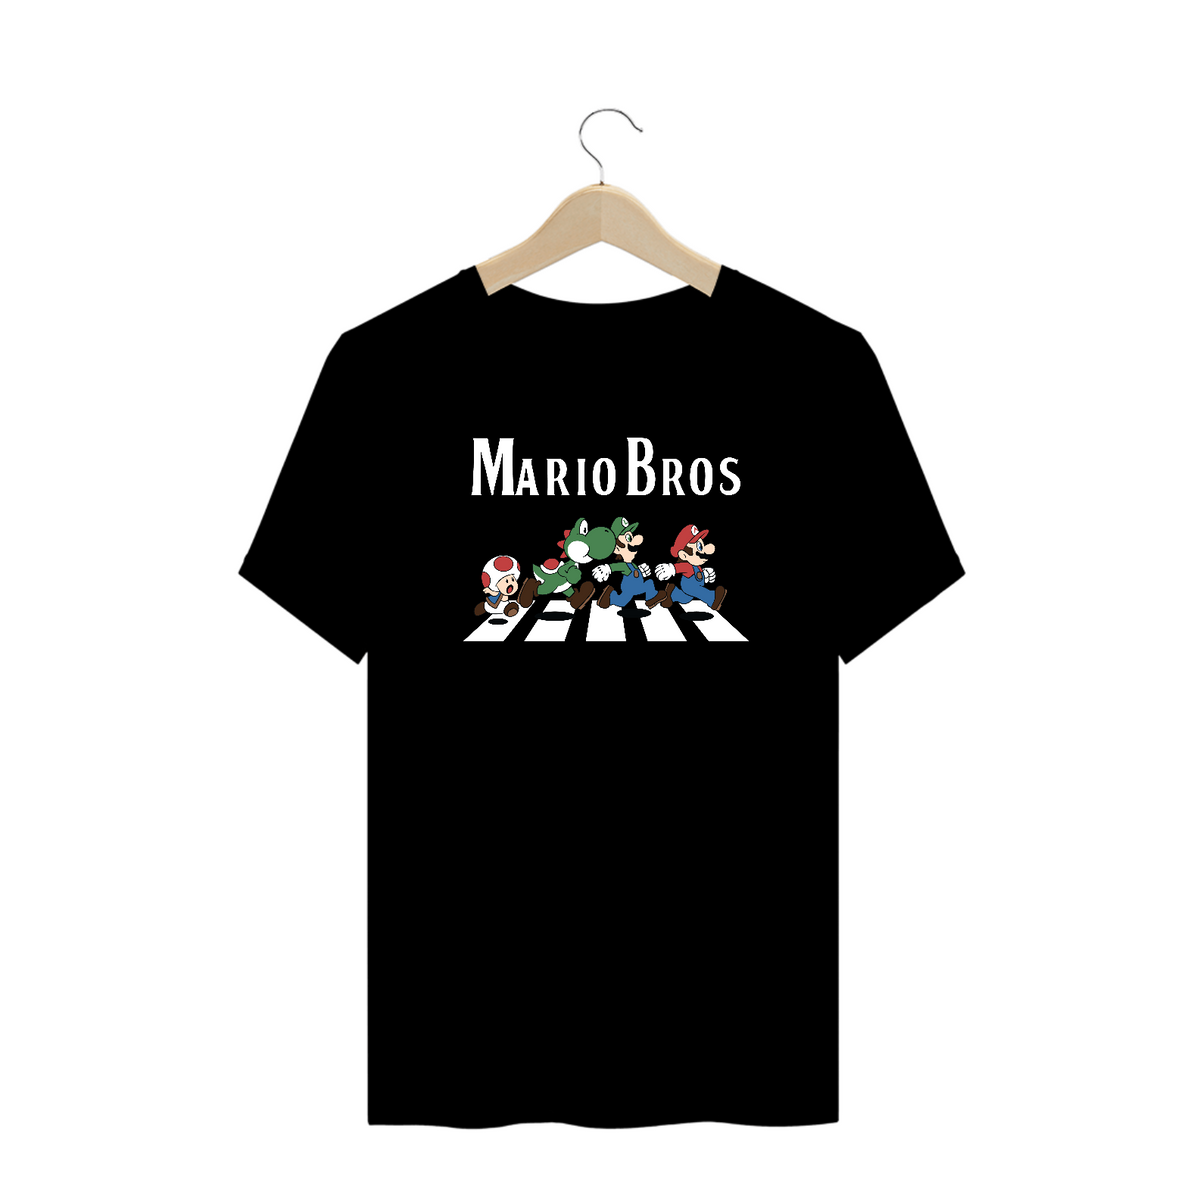 Nome do produto: The Mario Bros